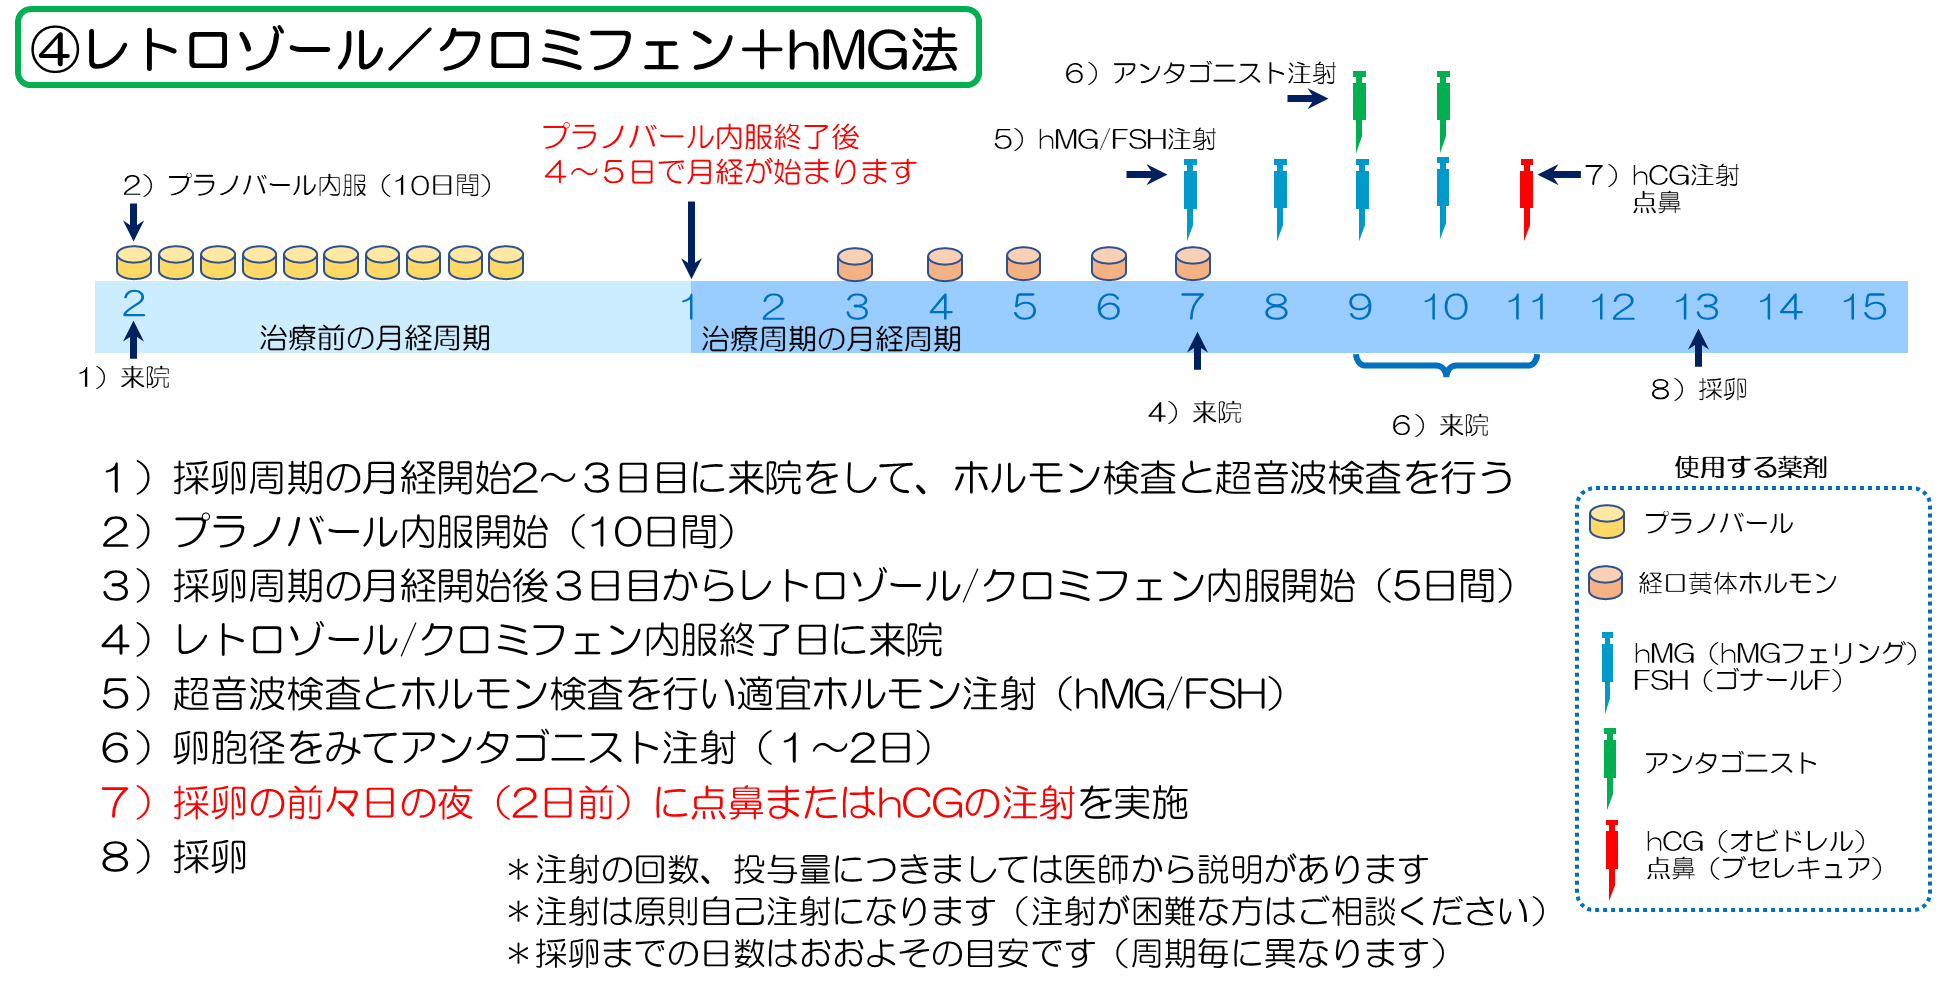 クロミフェン（CC）+hMG法／レトロゾール+hMG法